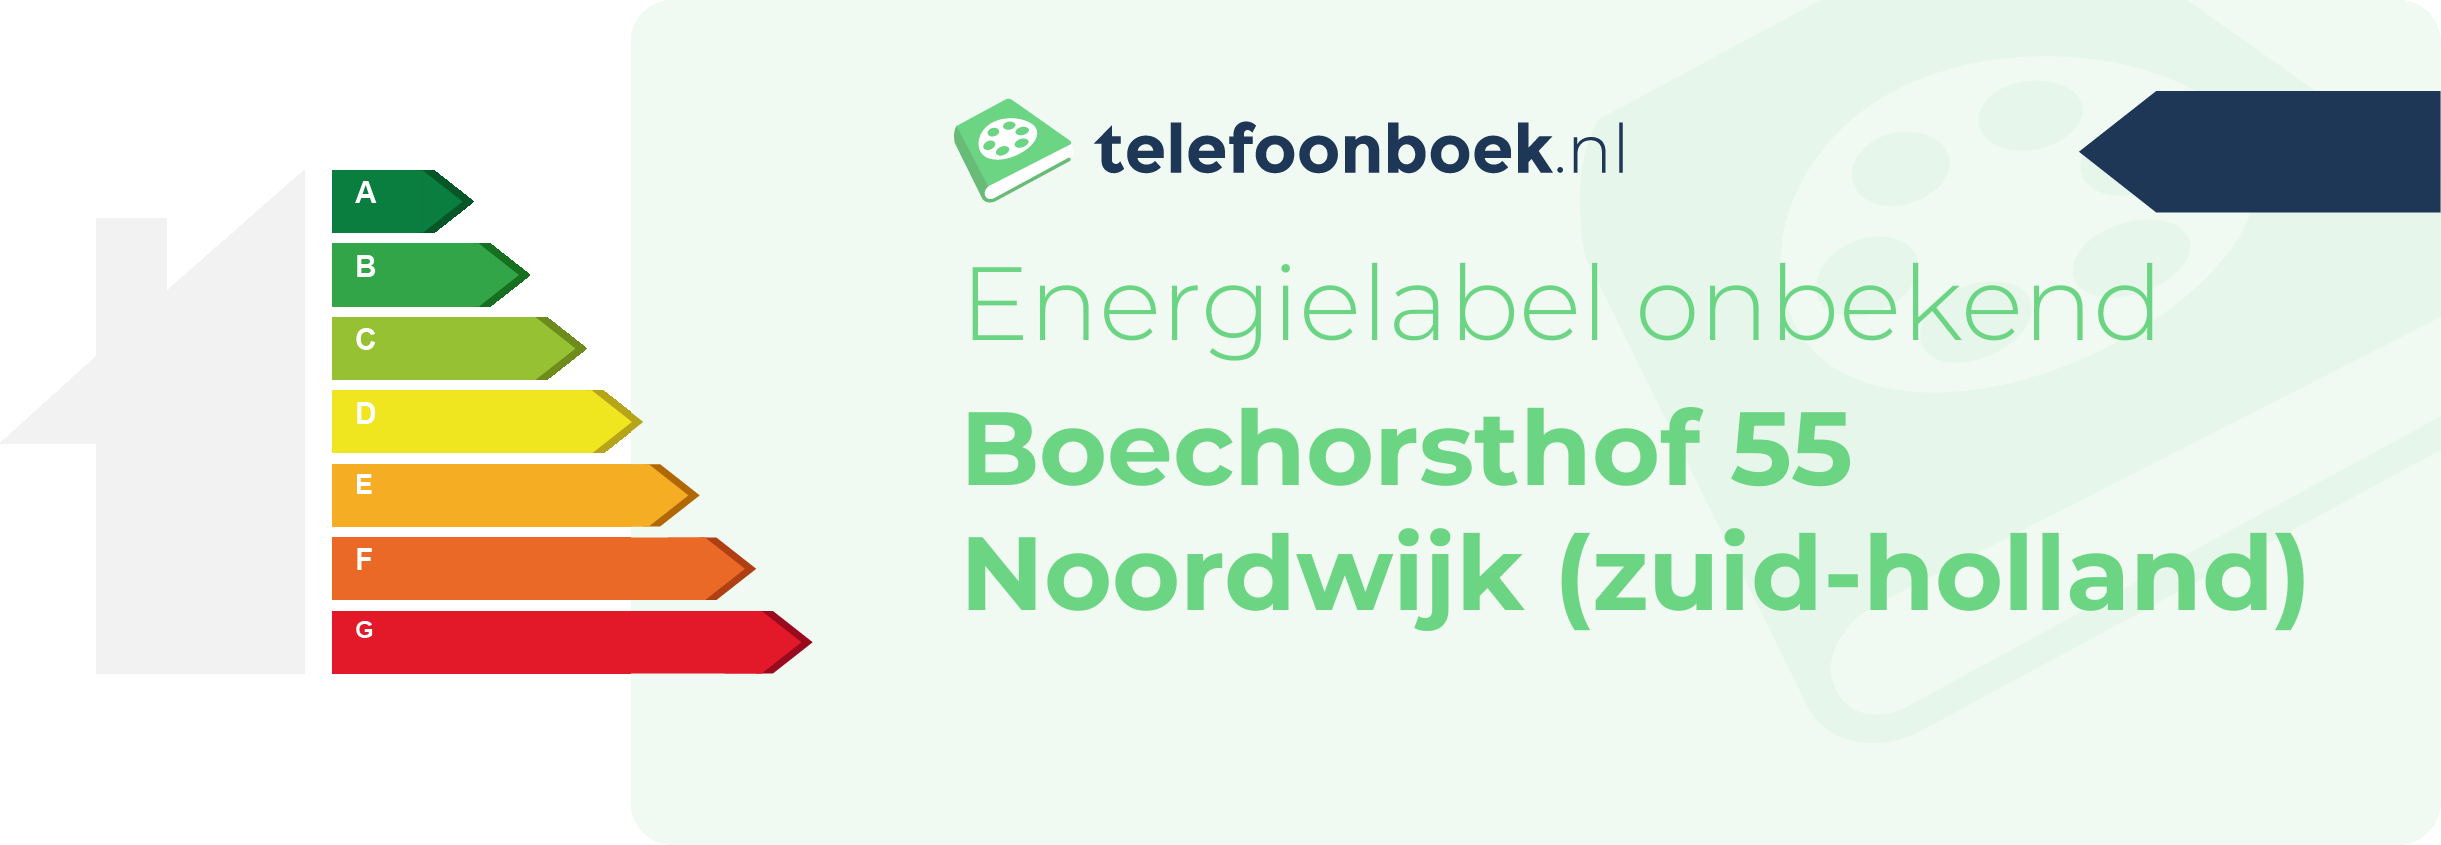 Energielabel Boechorsthof 55 Noordwijk (Zuid-Holland)